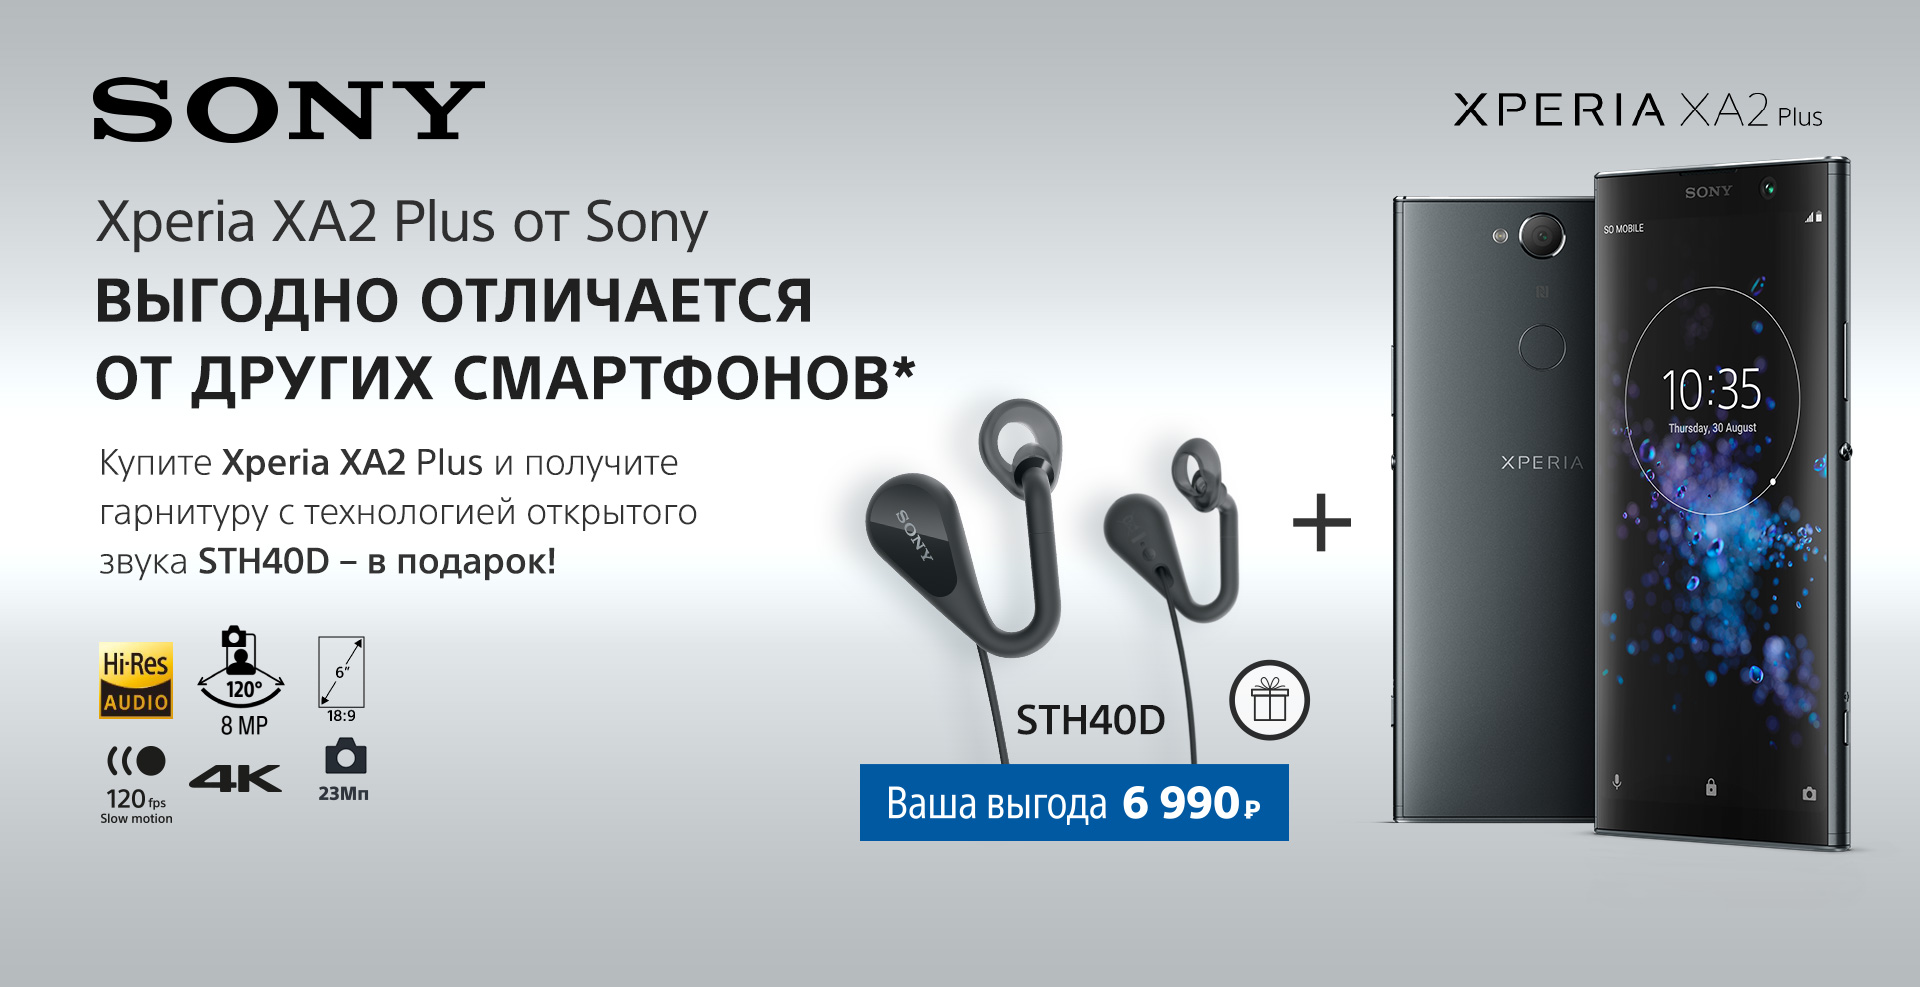 Xperia XA2 Plus от Sony. Уже в продаже.